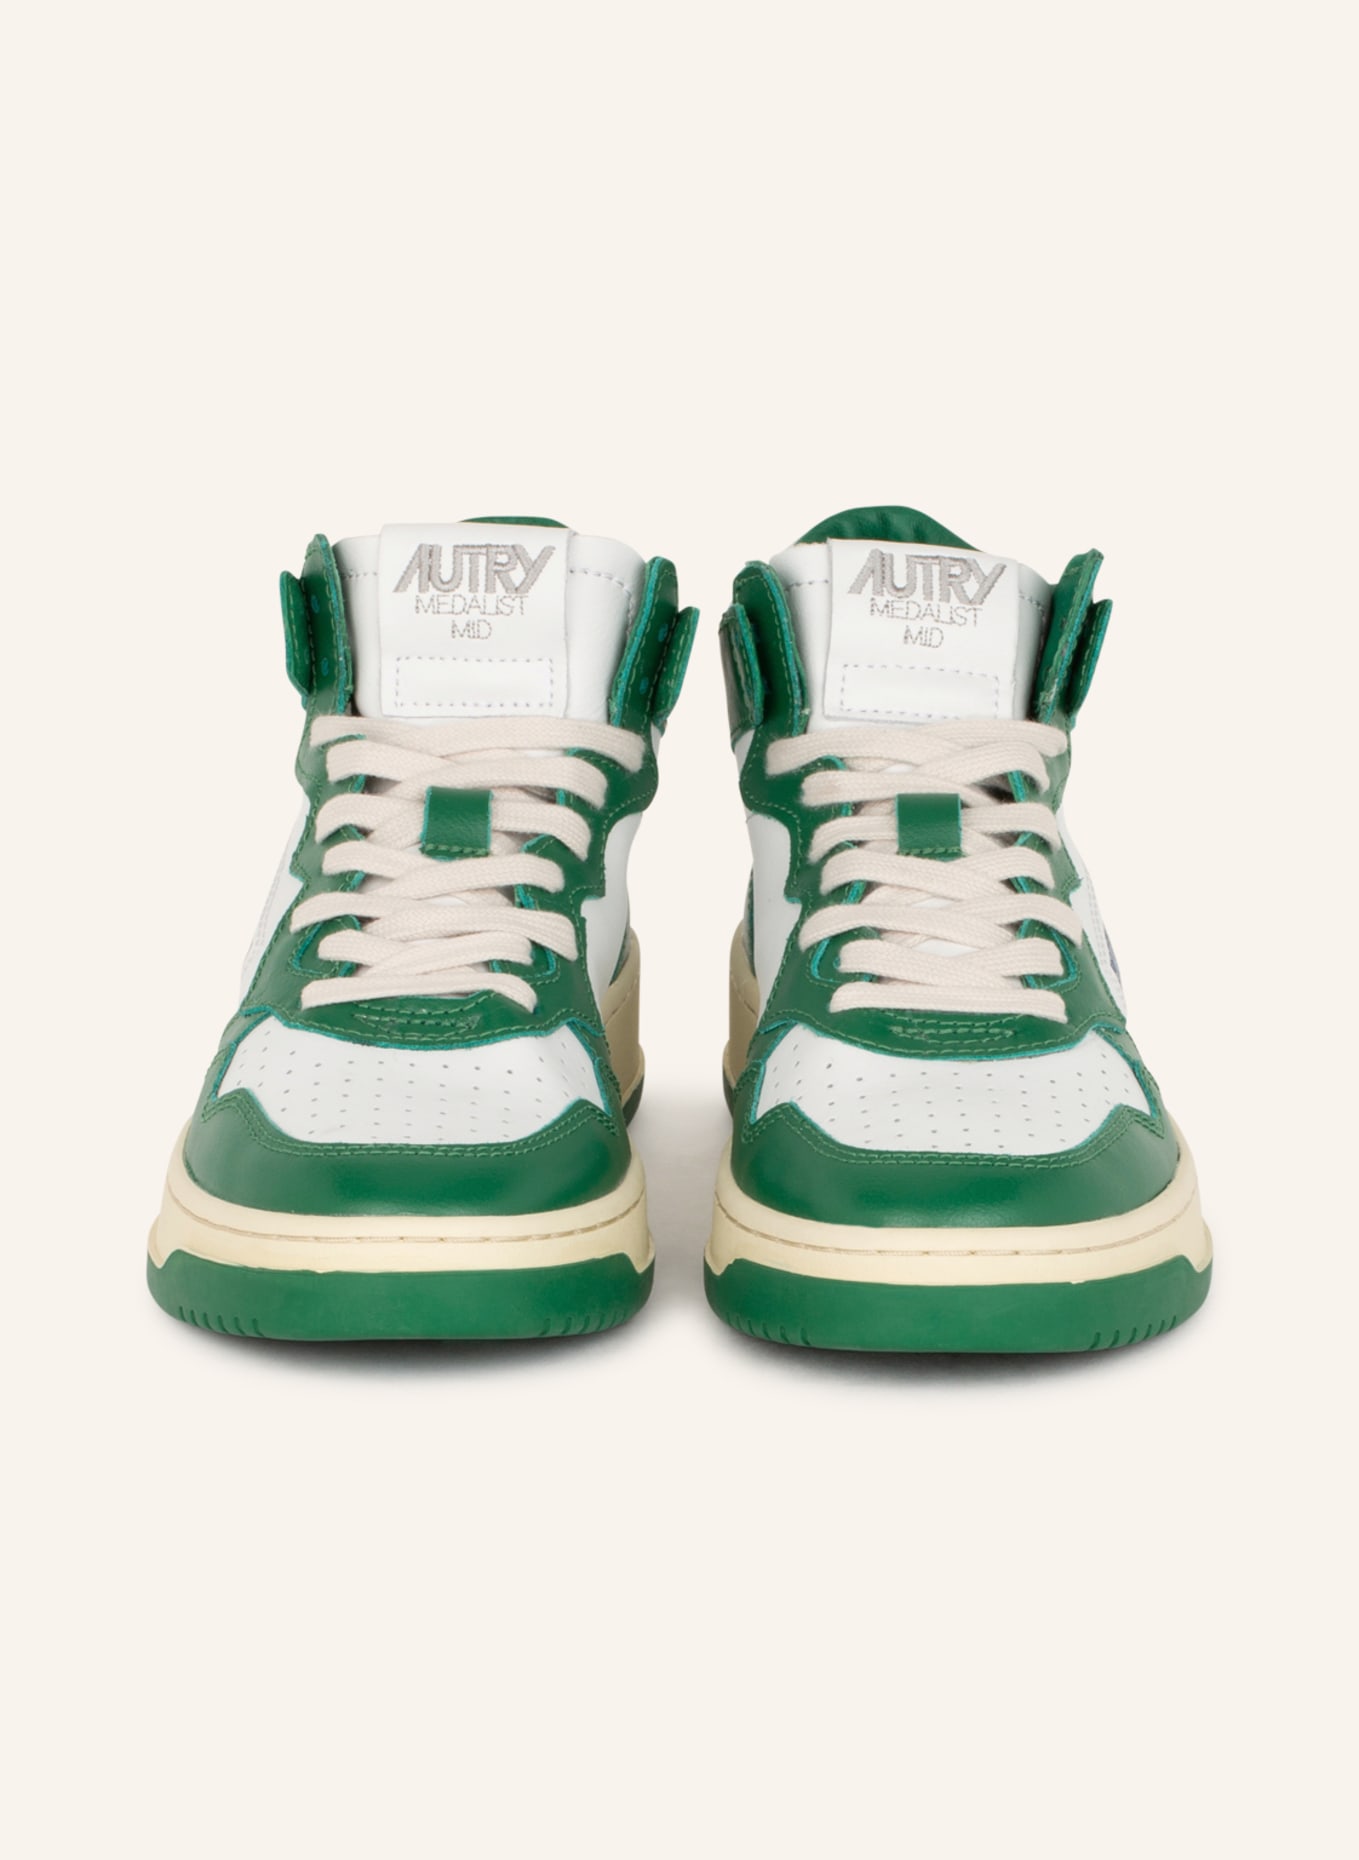 AUTRY Hightop-Sneaker MEDALIST, Farbe: WEISS/ GRÜN (Bild 3)